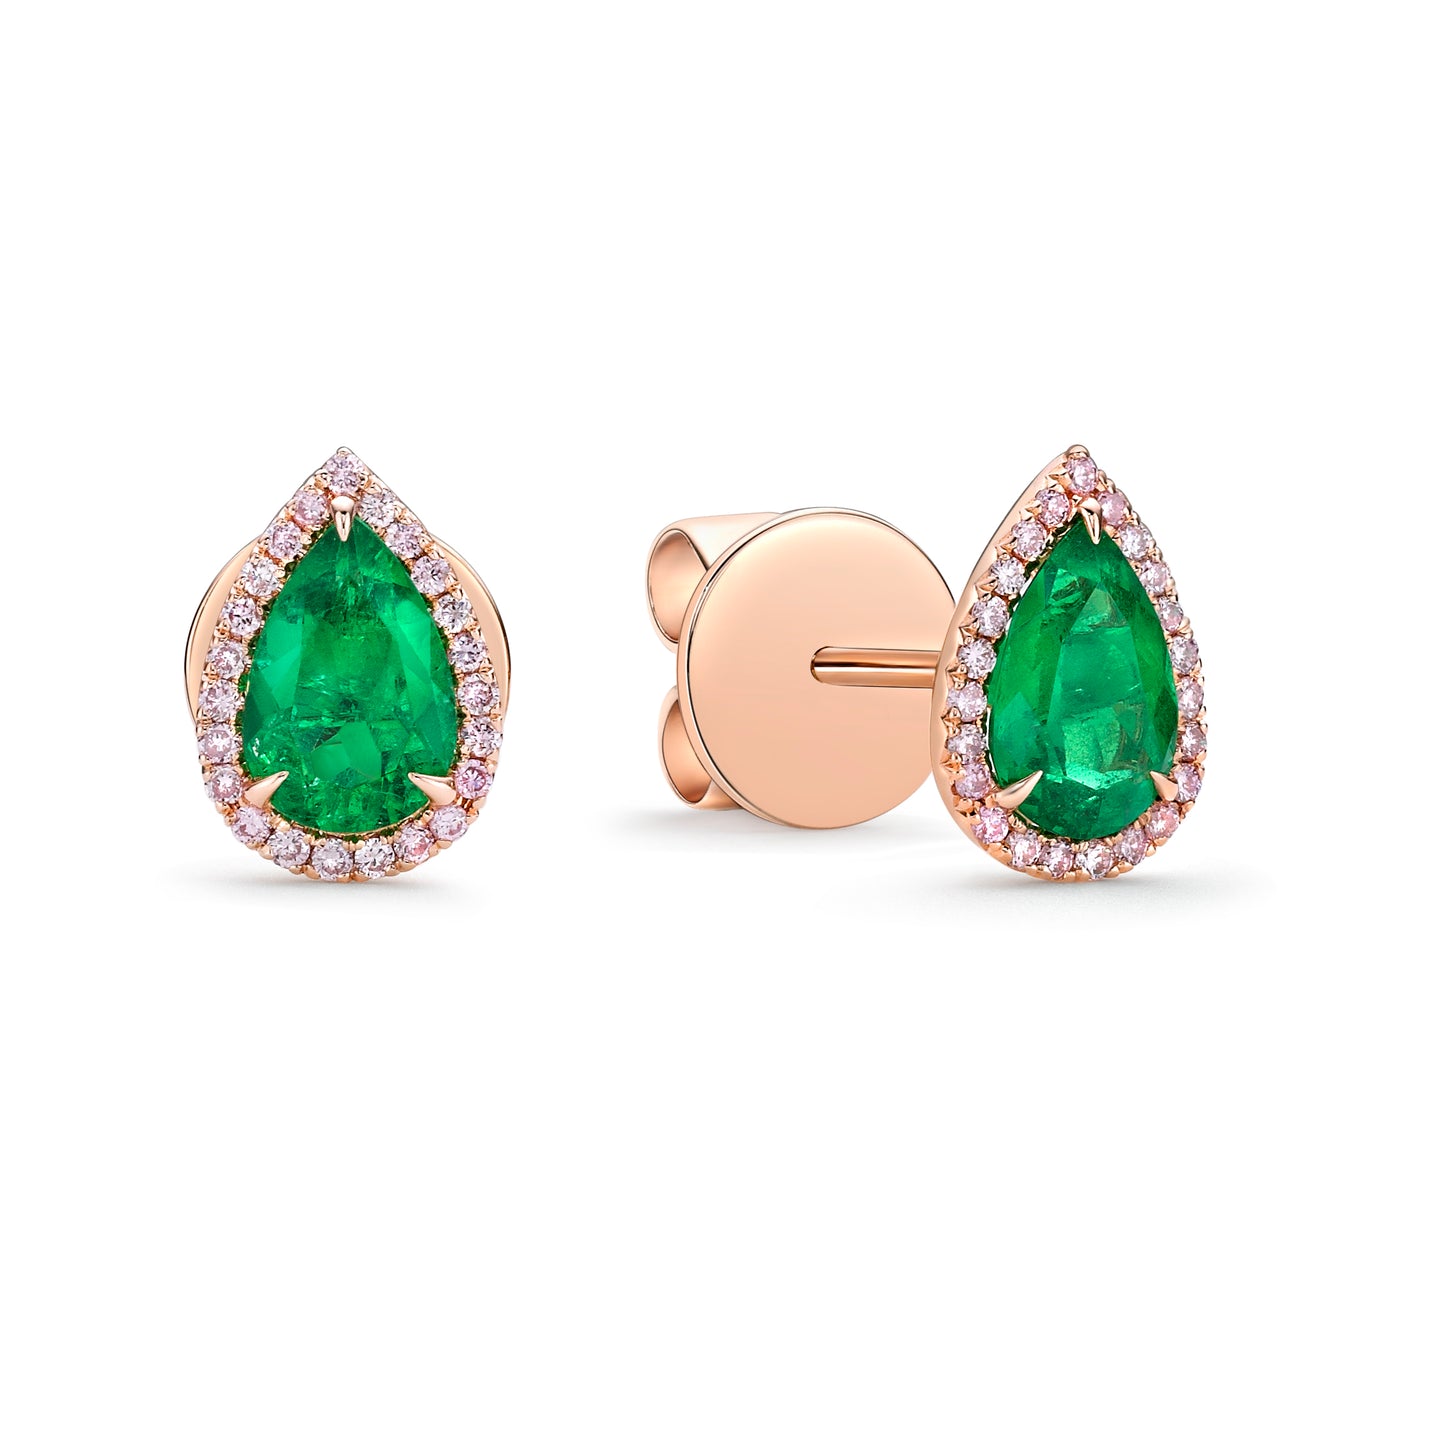 梨形祖母绿粉红色钻石耳环